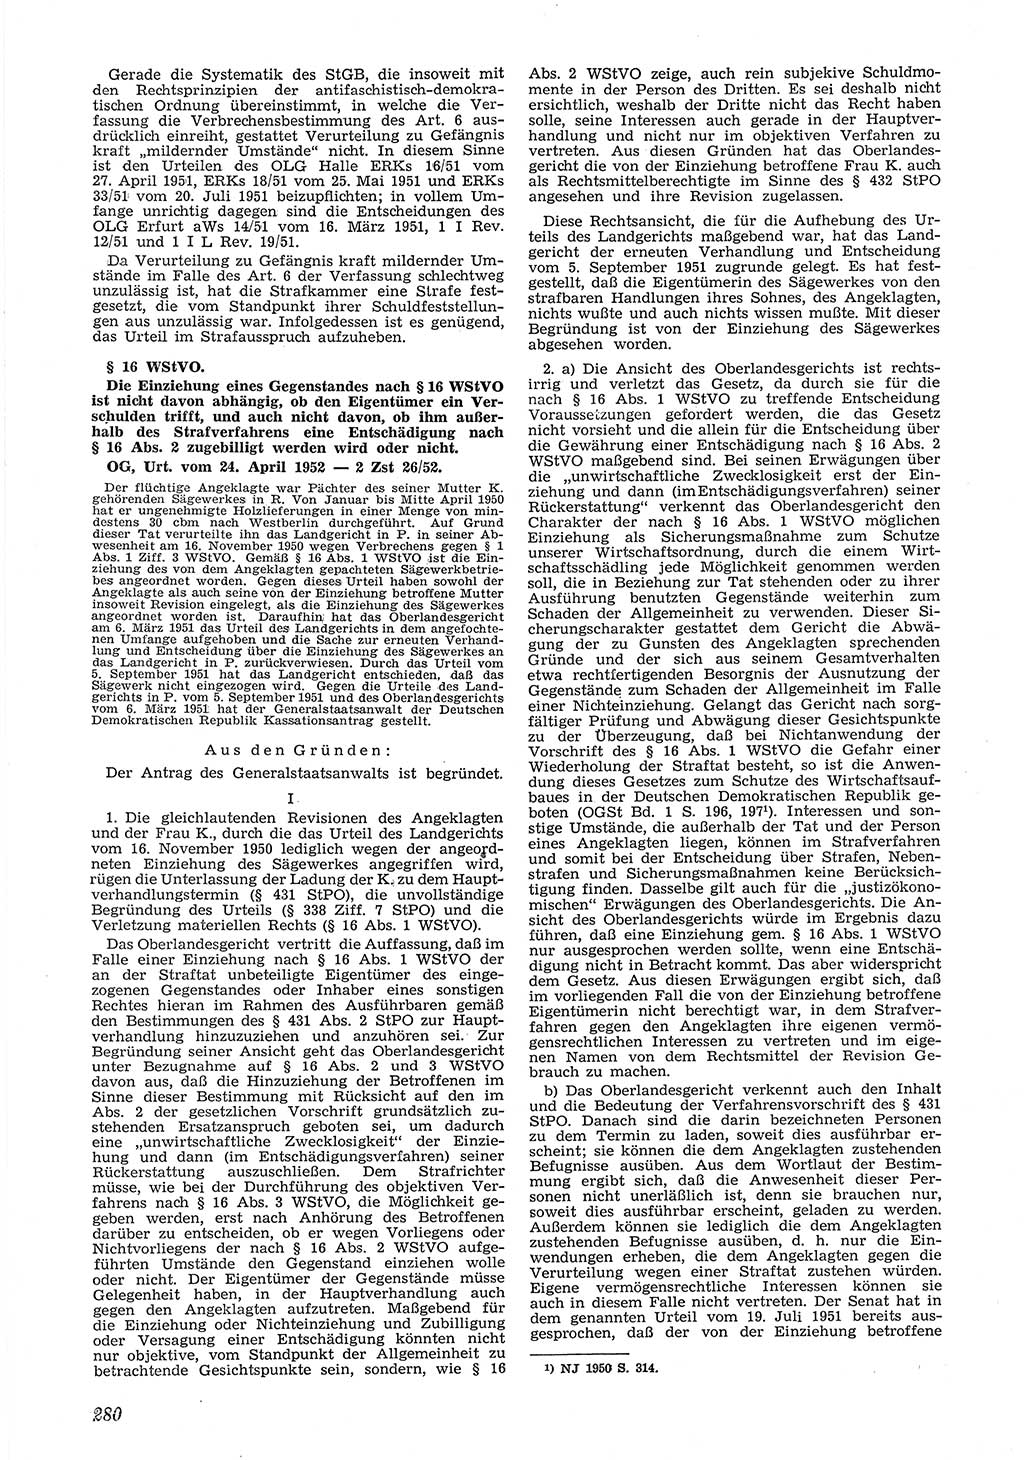 Neue Justiz (NJ), Zeitschrift für Recht und Rechtswissenschaft [Deutsche Demokratische Republik (DDR)], 6. Jahrgang 1952, Seite 280 (NJ DDR 1952, S. 280)